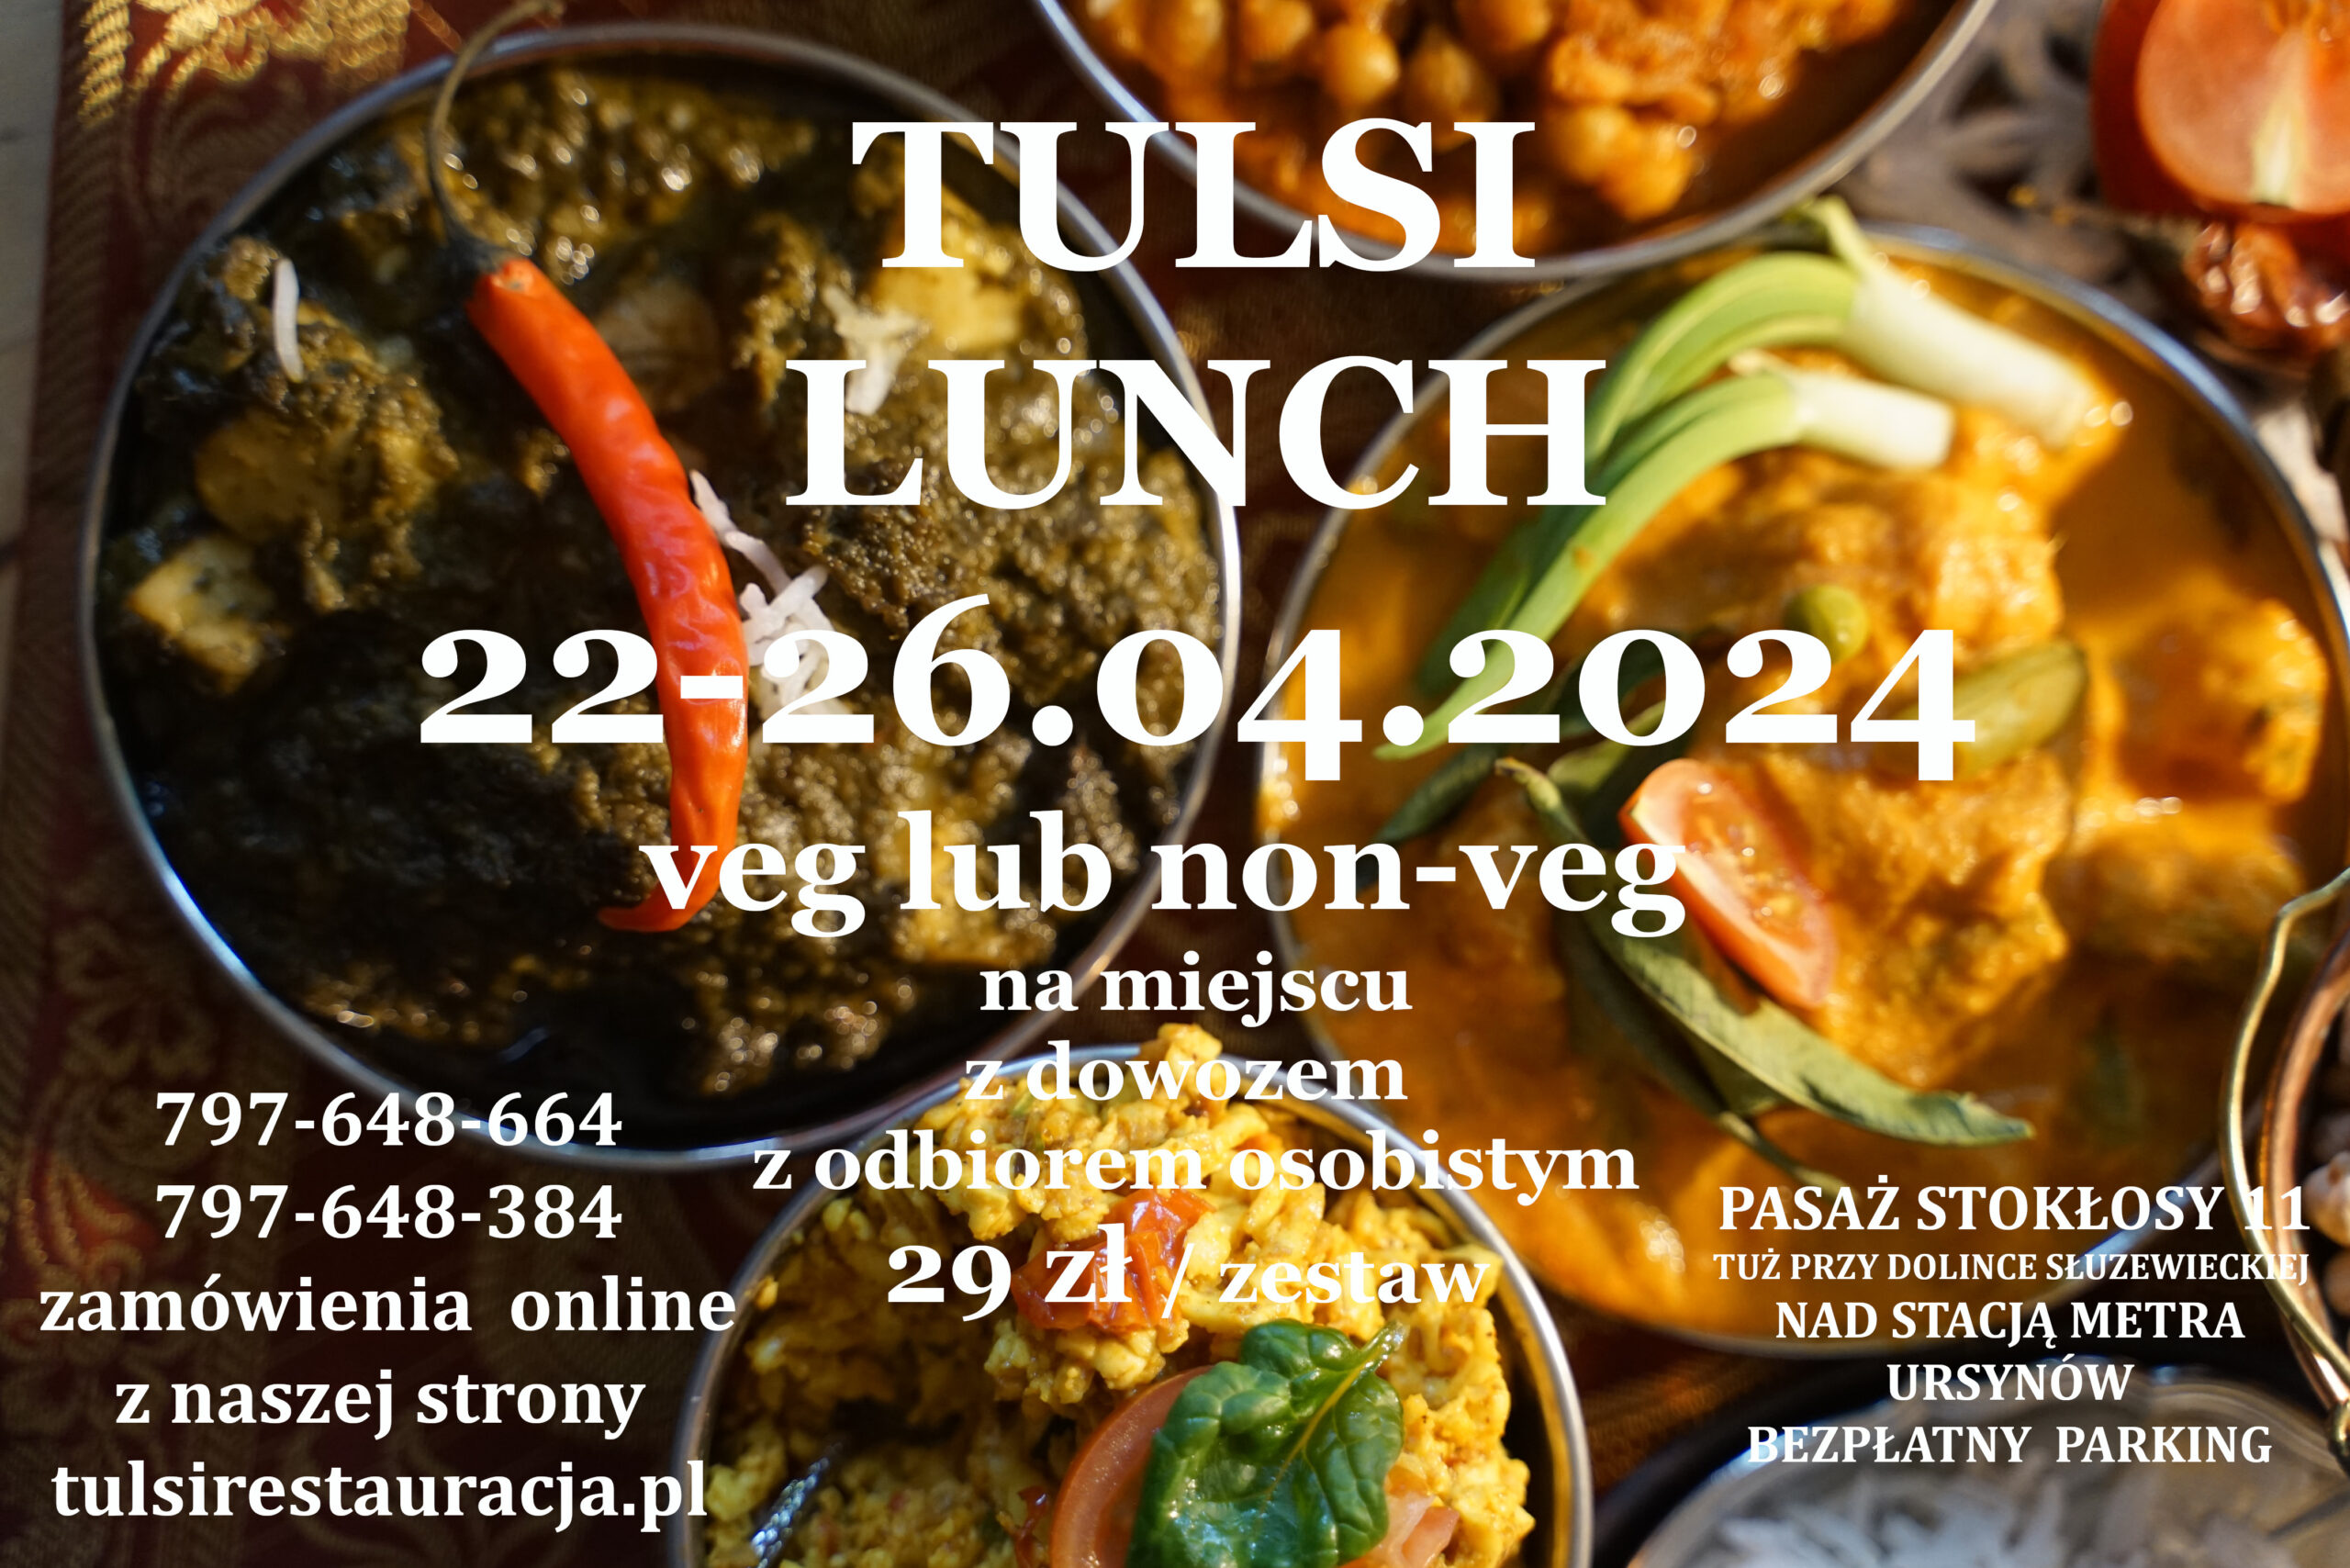 🙏🐣🍛 Tulsi Lunch 22-26.04.2024  (29 zł) do wyboru z:  VEG /NON-VEG  – na miejscu, na wynos i dowóz (min 3 zestawów) 🙏 Lunch w Tulsi  Ursynów – Mokotow🙏